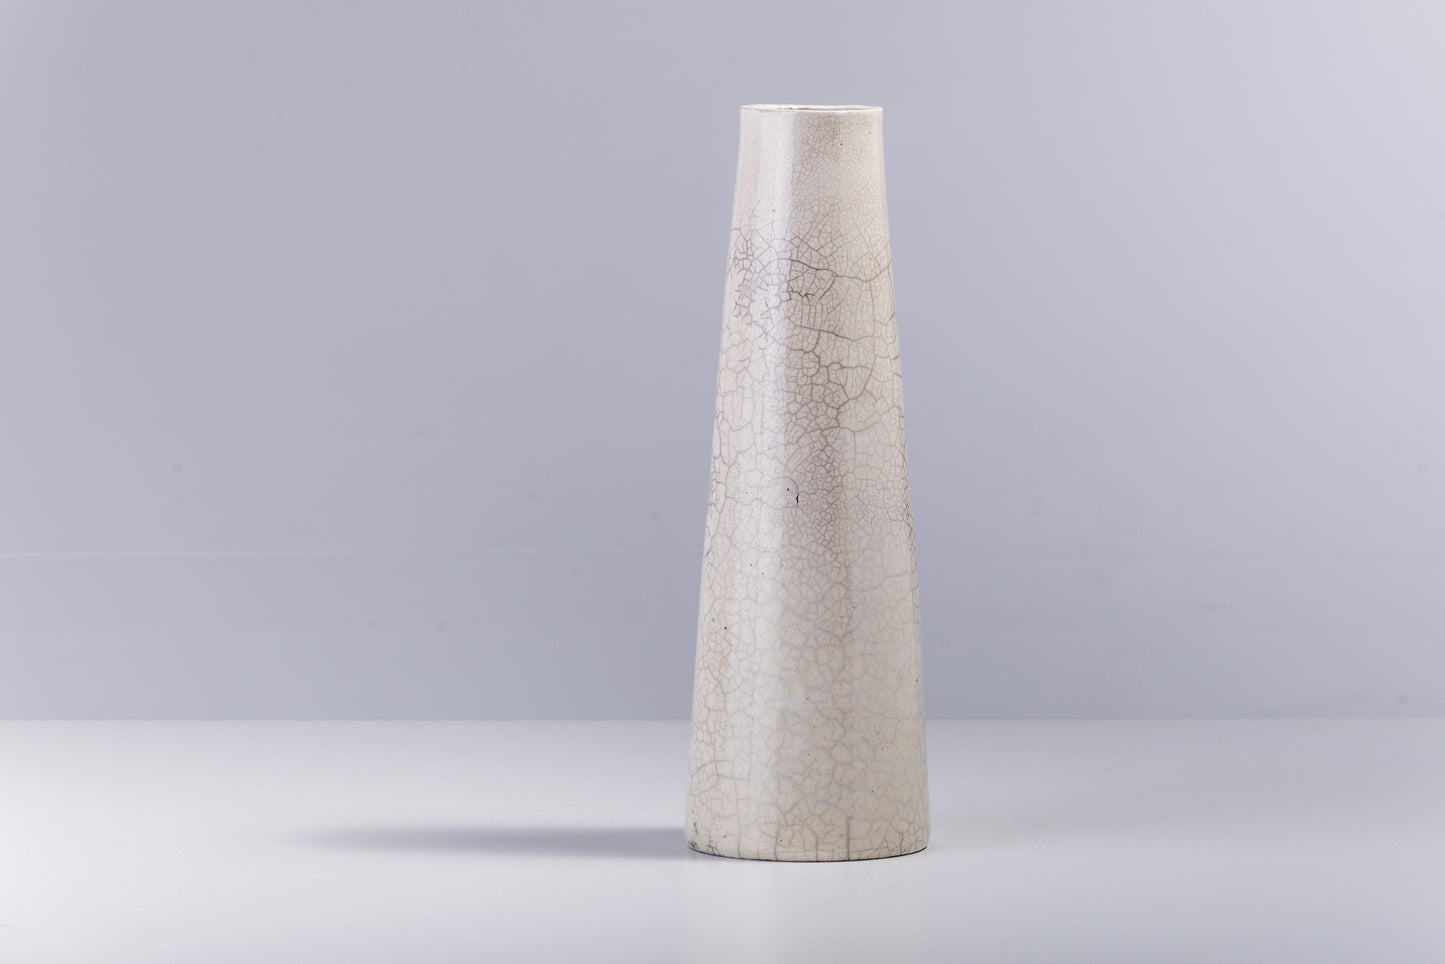 Japanese Modern Minimalist Hana Vertical L Vase Raku Ceramic White Crakle